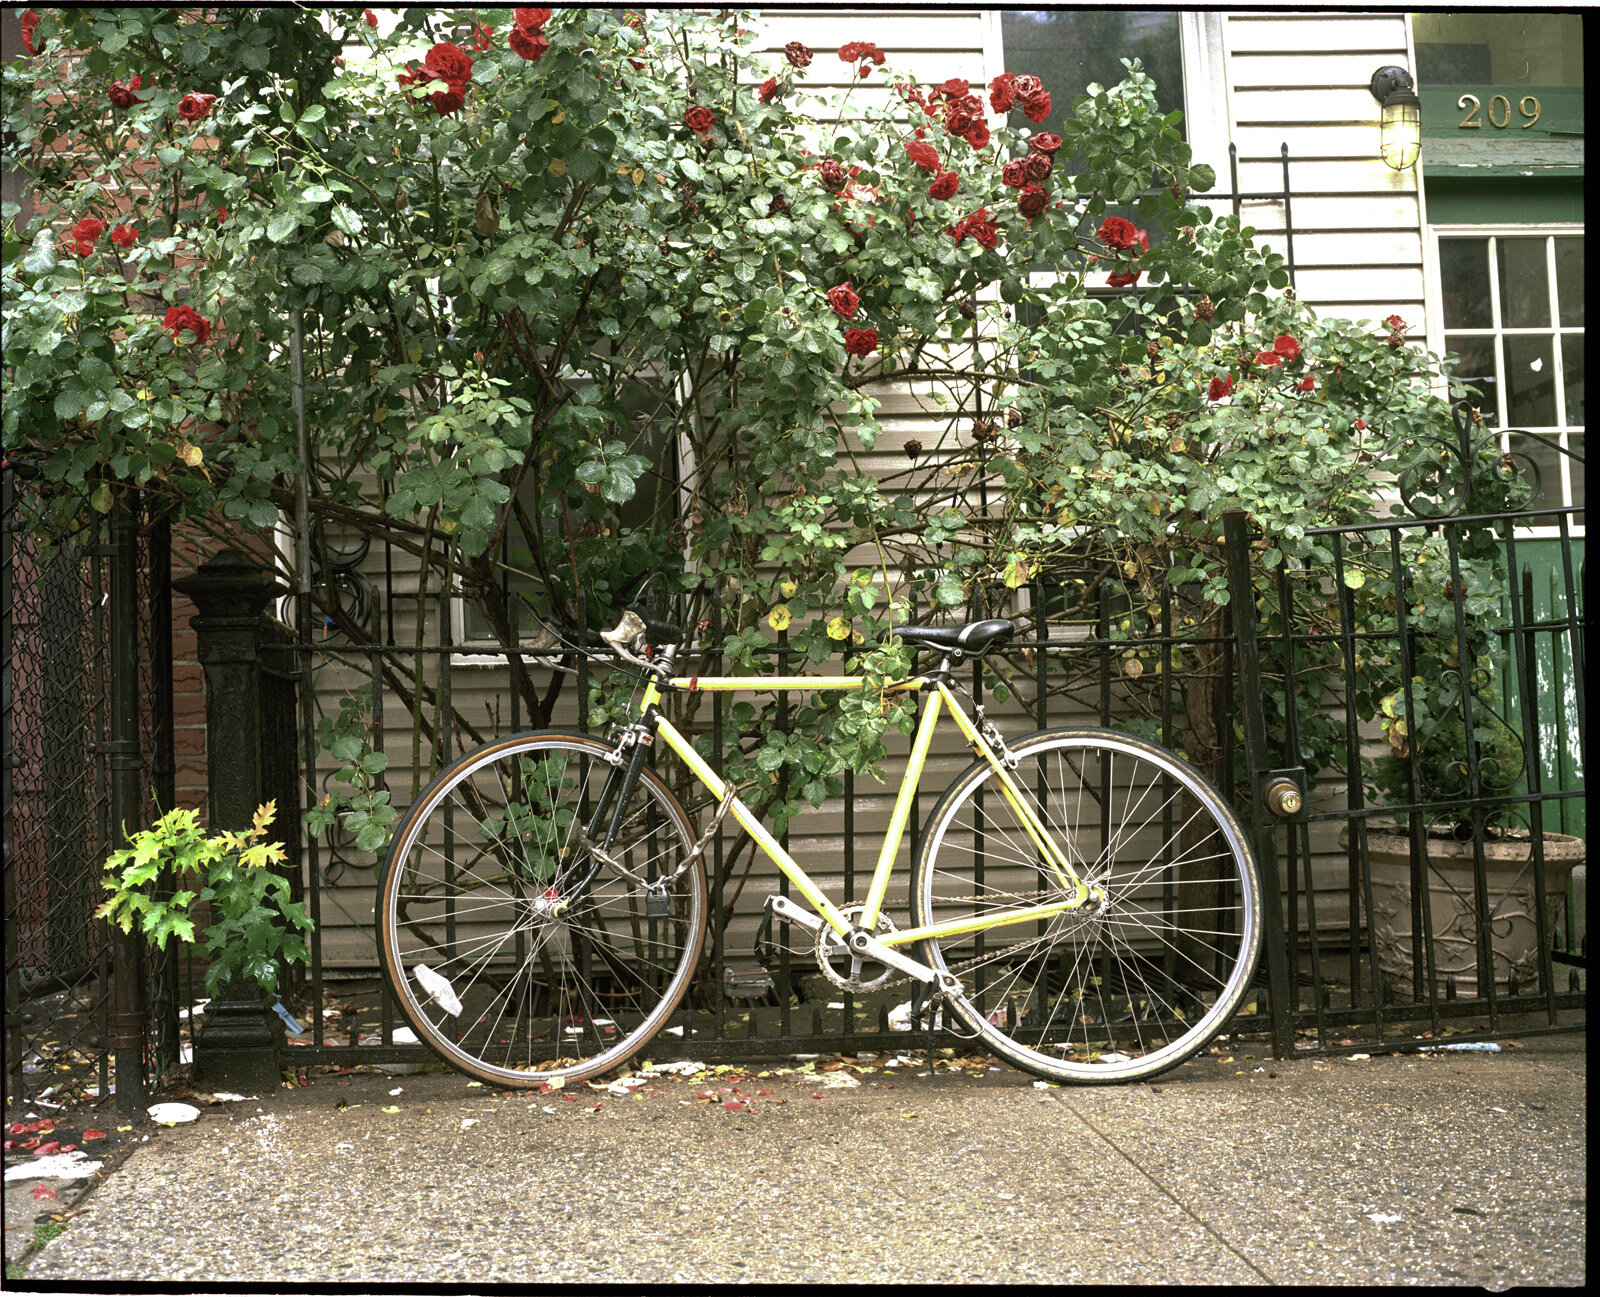 Bike and roses